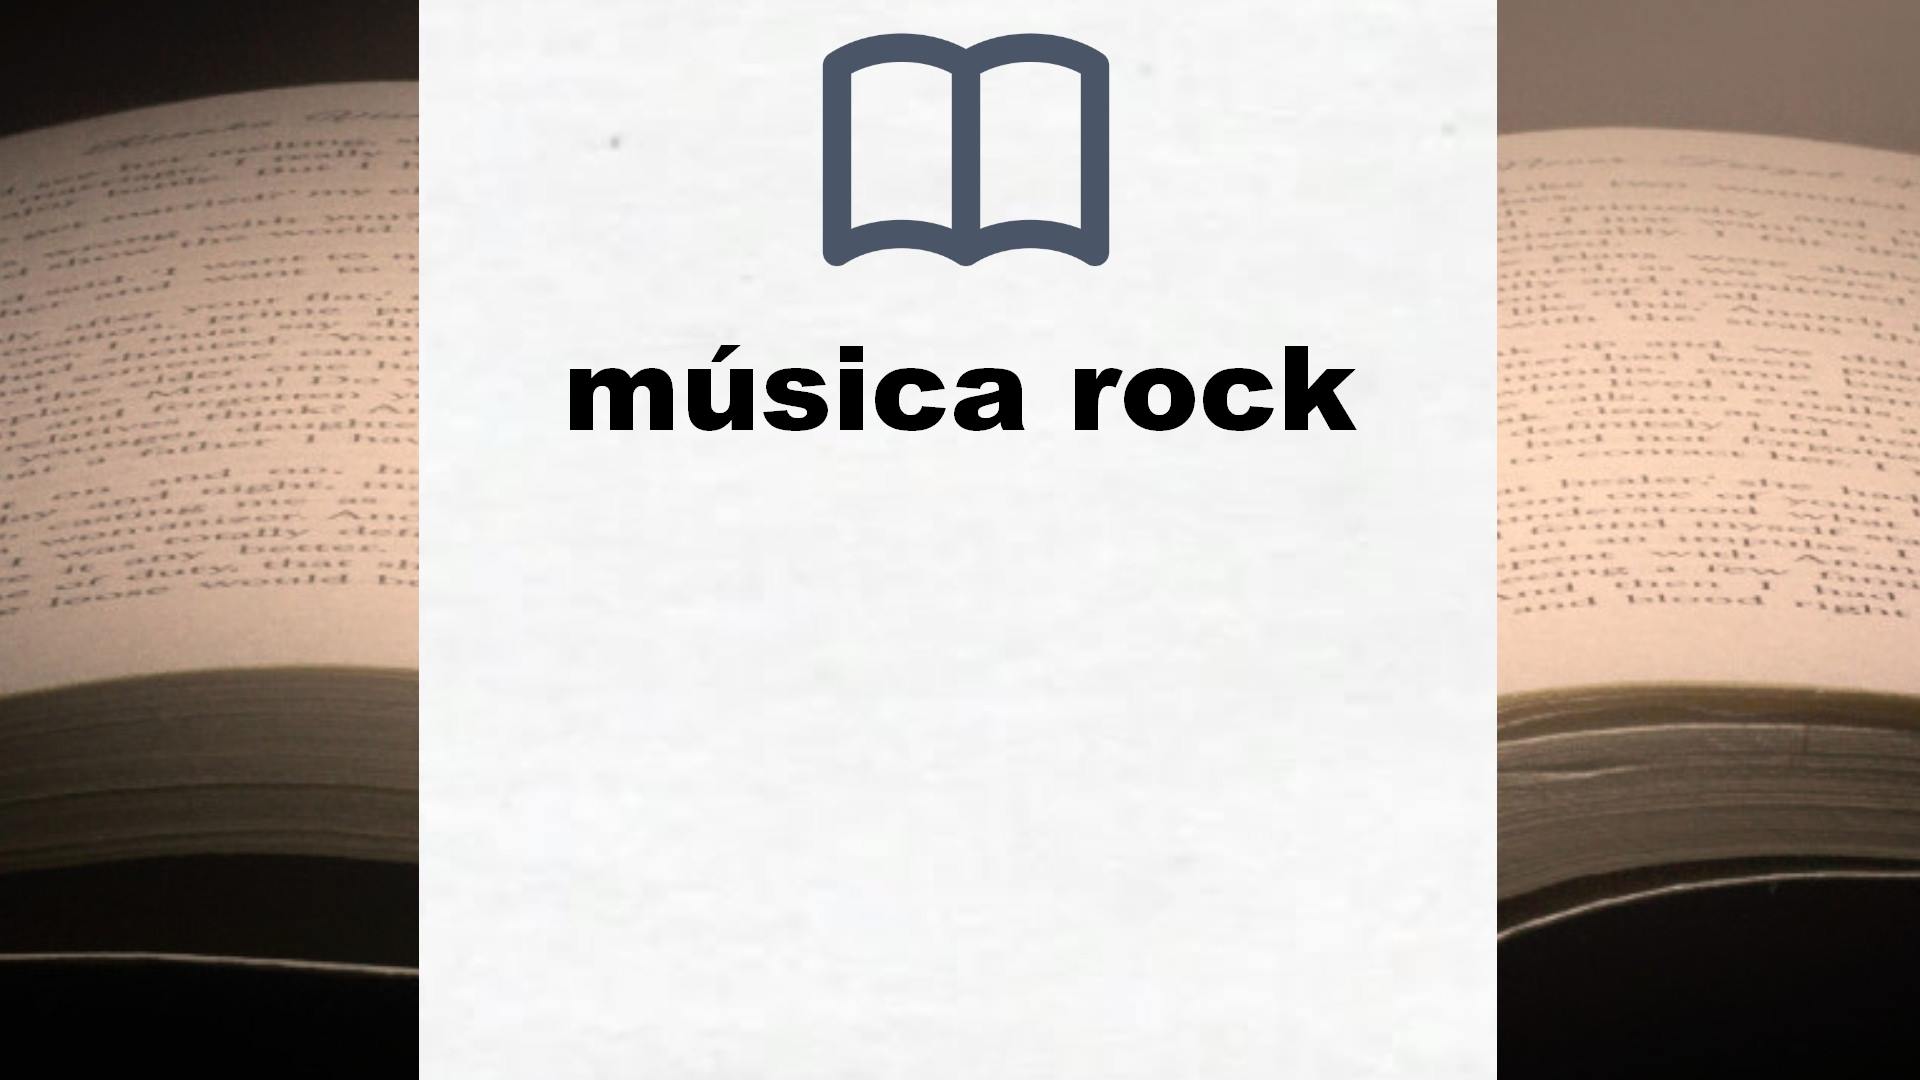 Libros sobre música rock